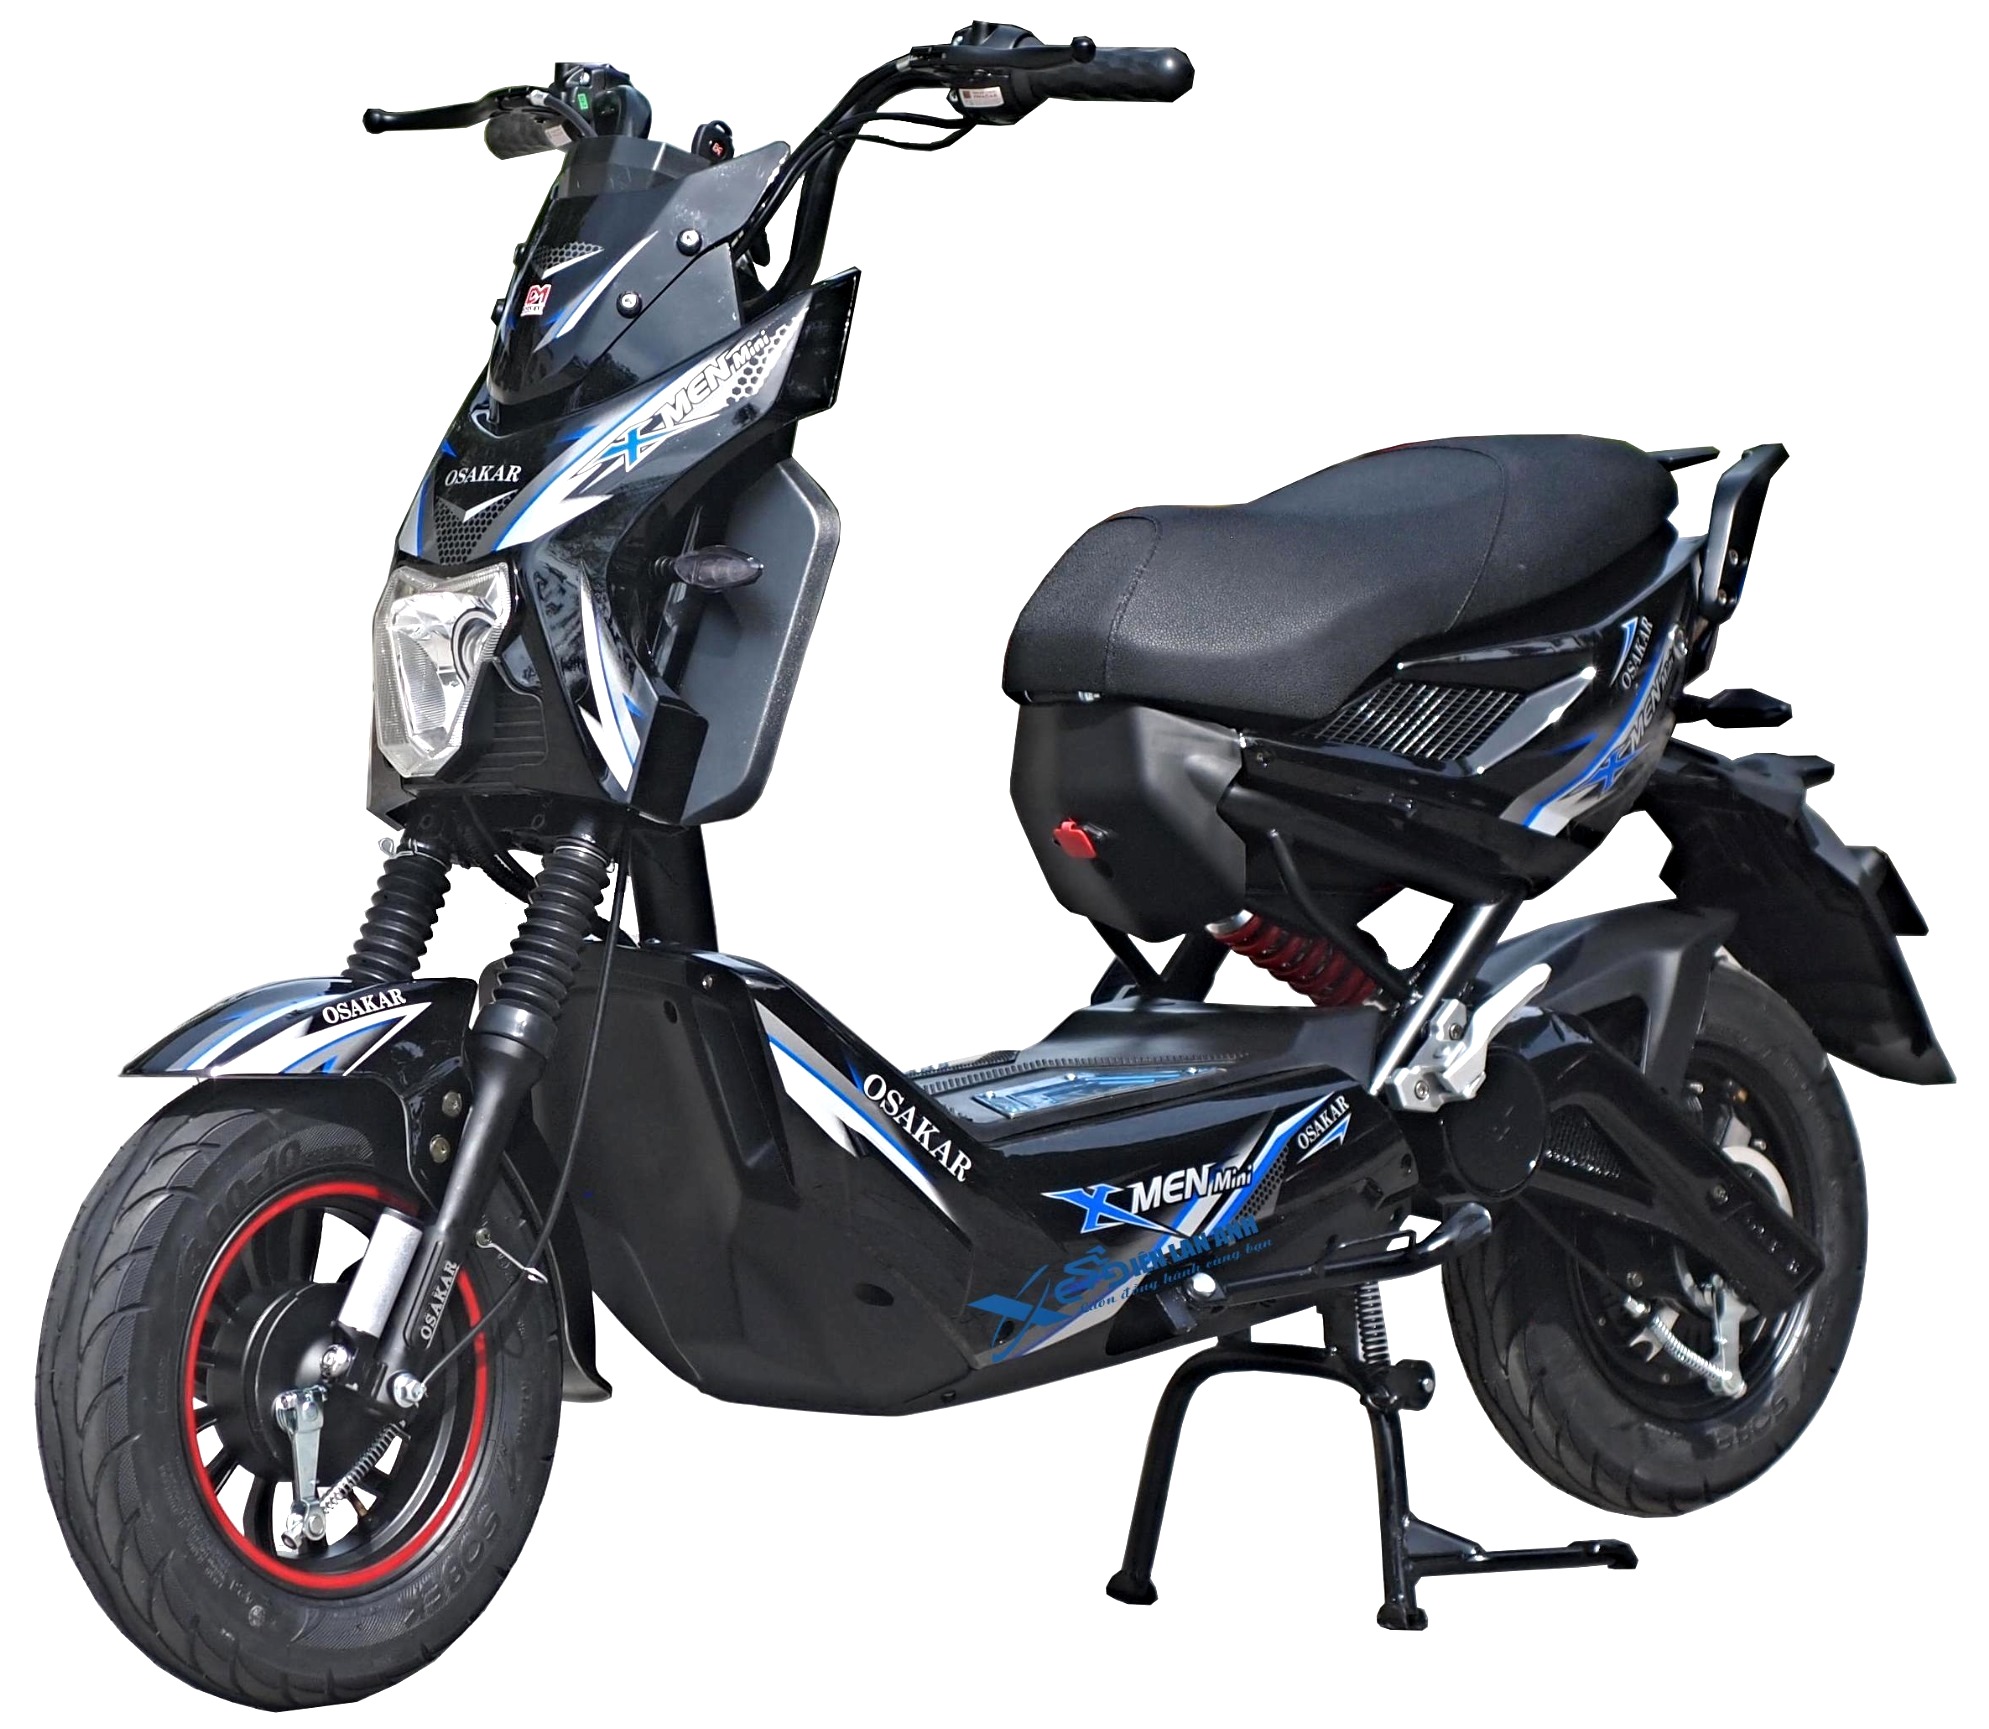 Xe đạp điện Xmen nhập khẩu chính hãng giá rẻ